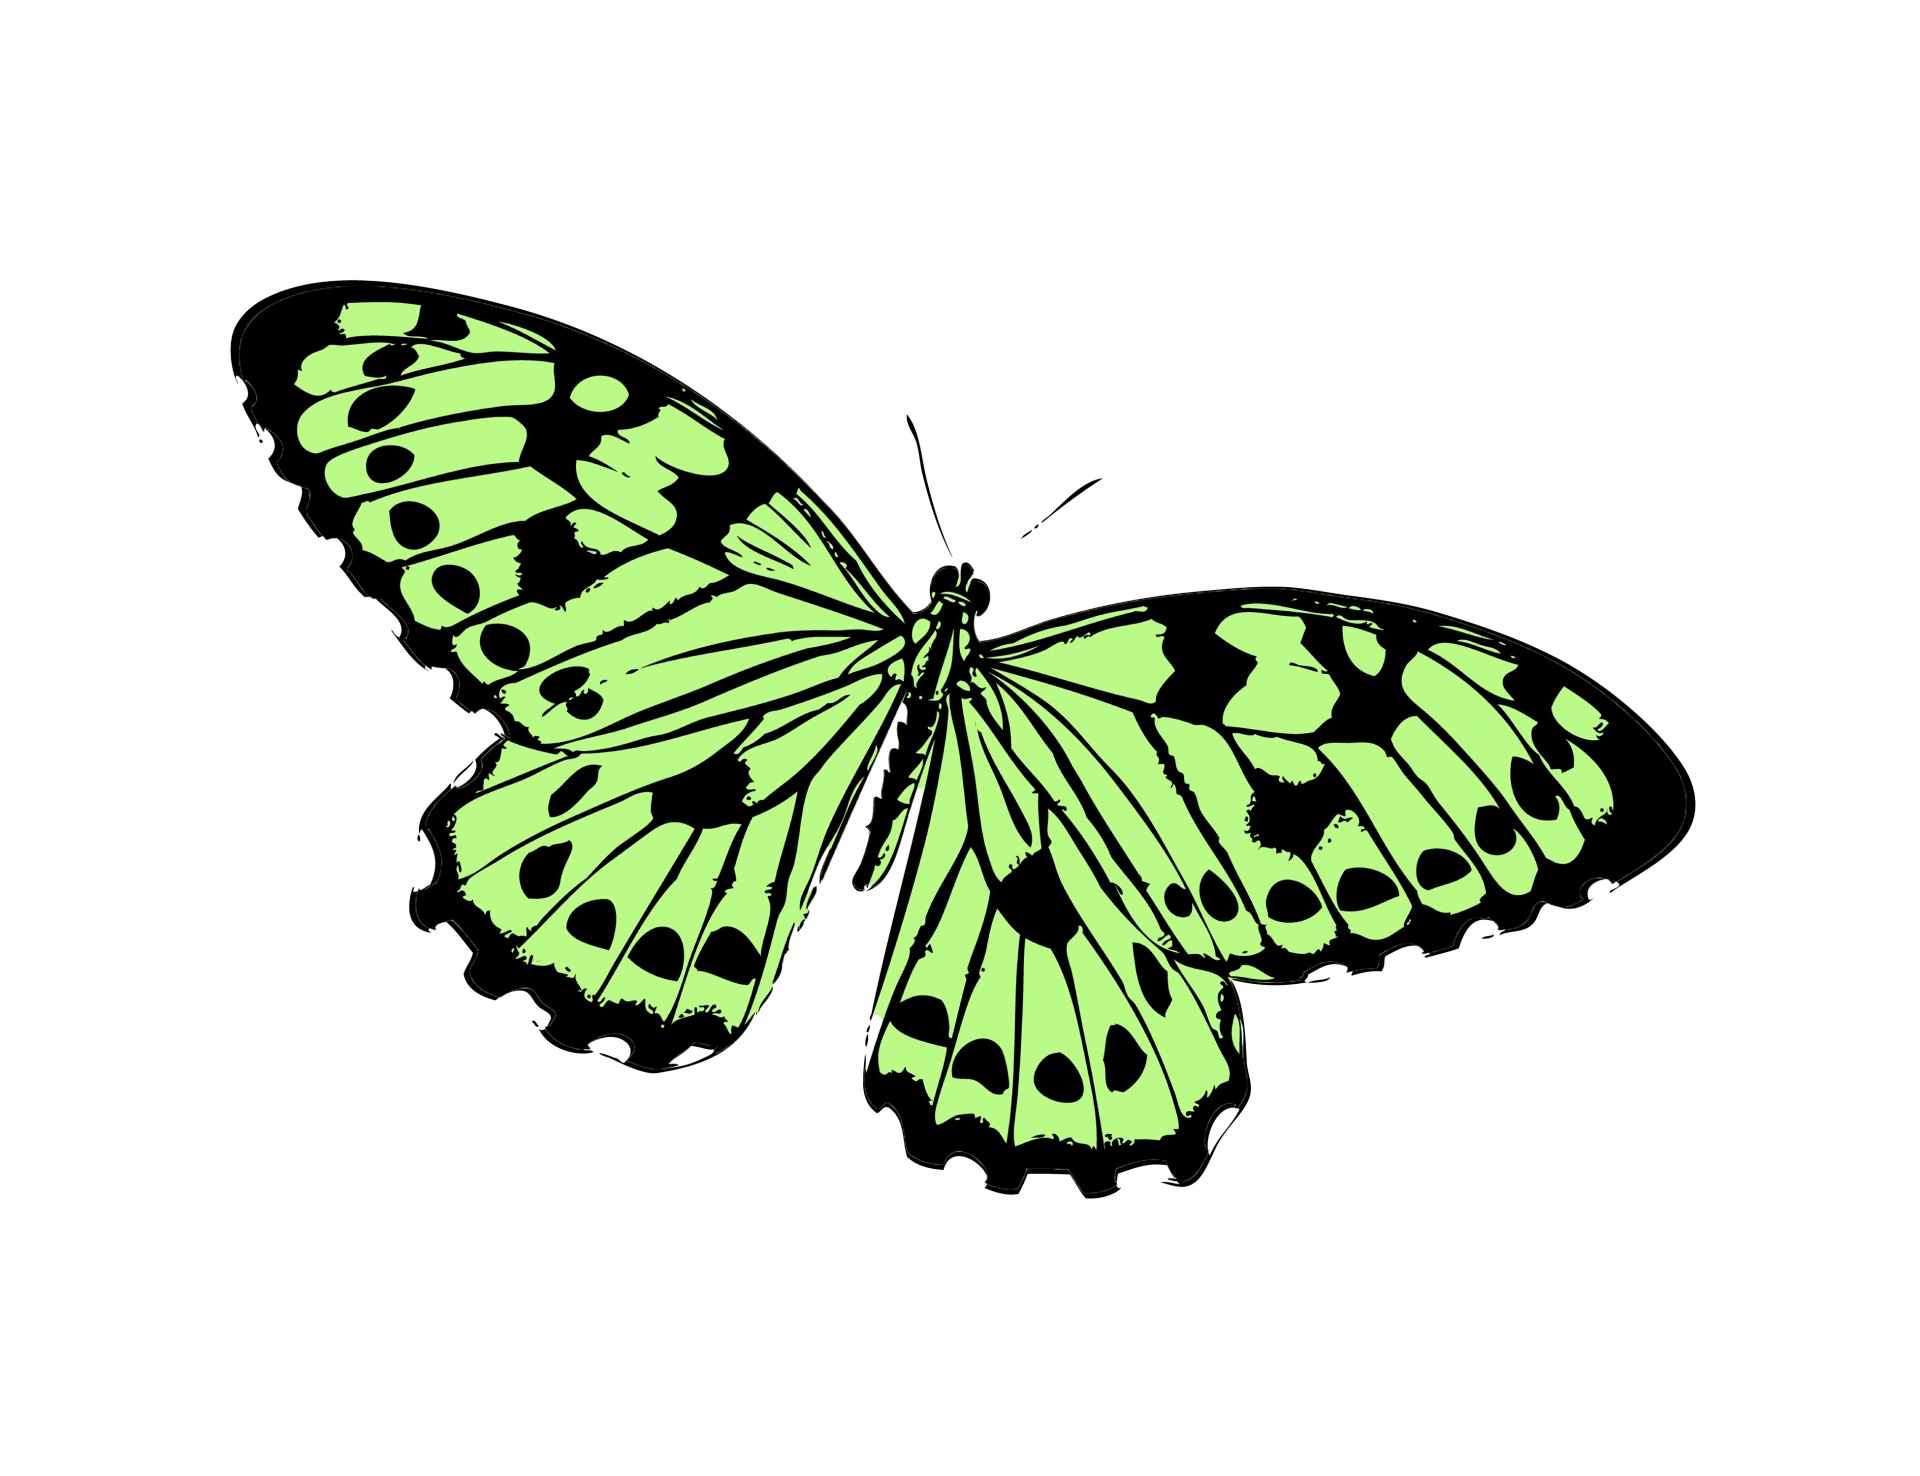 green butterflies clipart